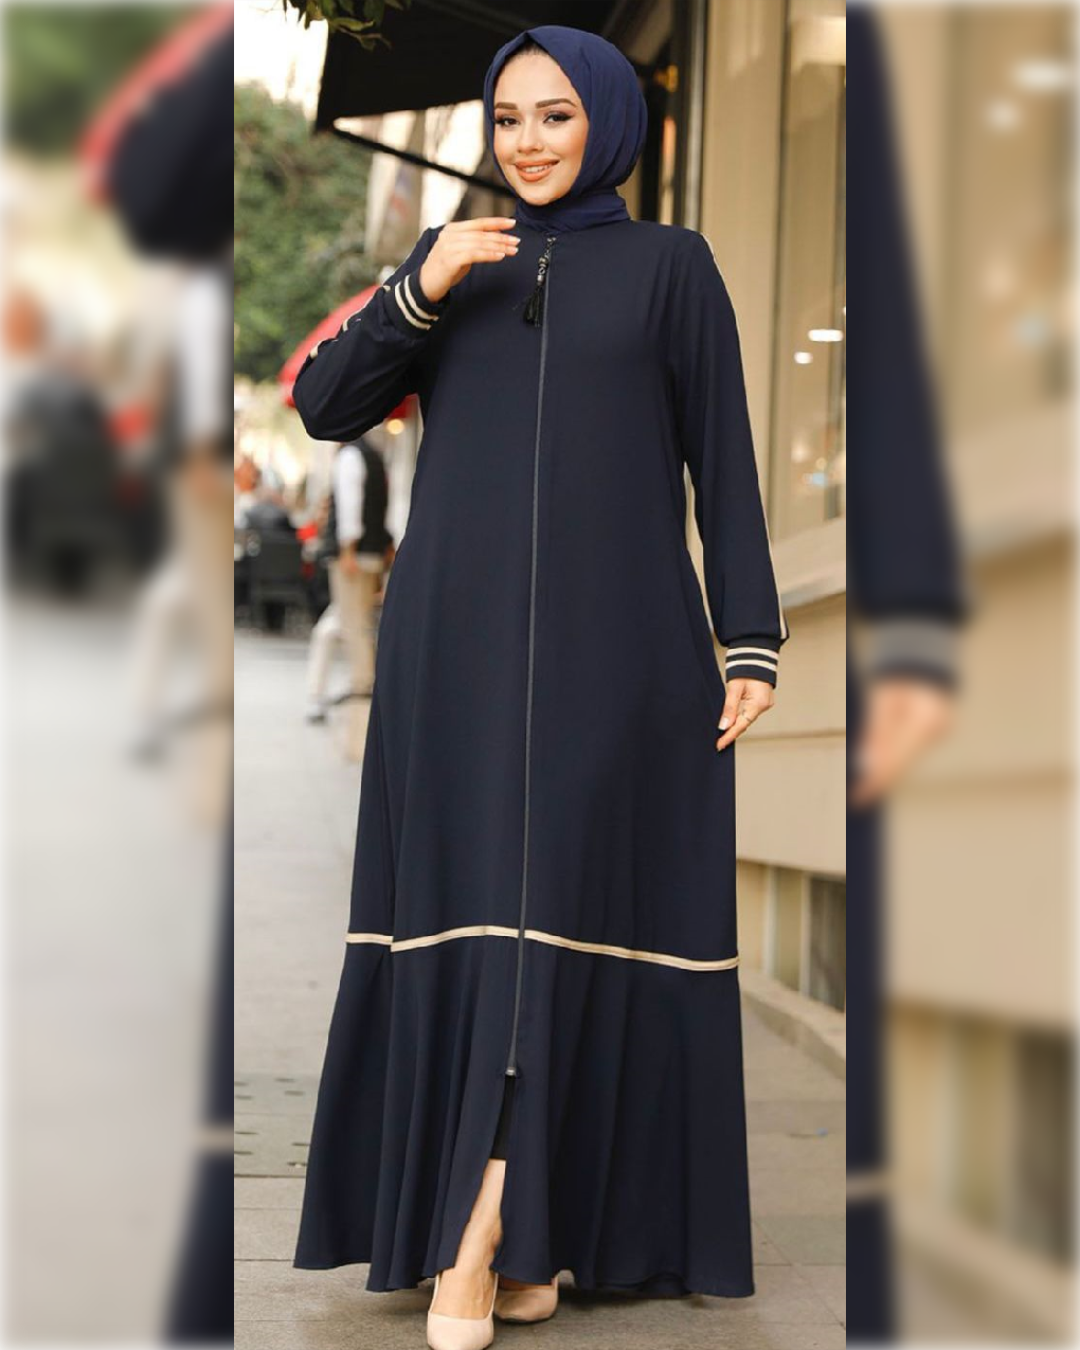 Fatimah Chic Abaya Dress for Summer in Navy Blue Shade   عباءة فاطمة الصيفية  باللون الكحلي الجميل و تفاصيل أنيقة